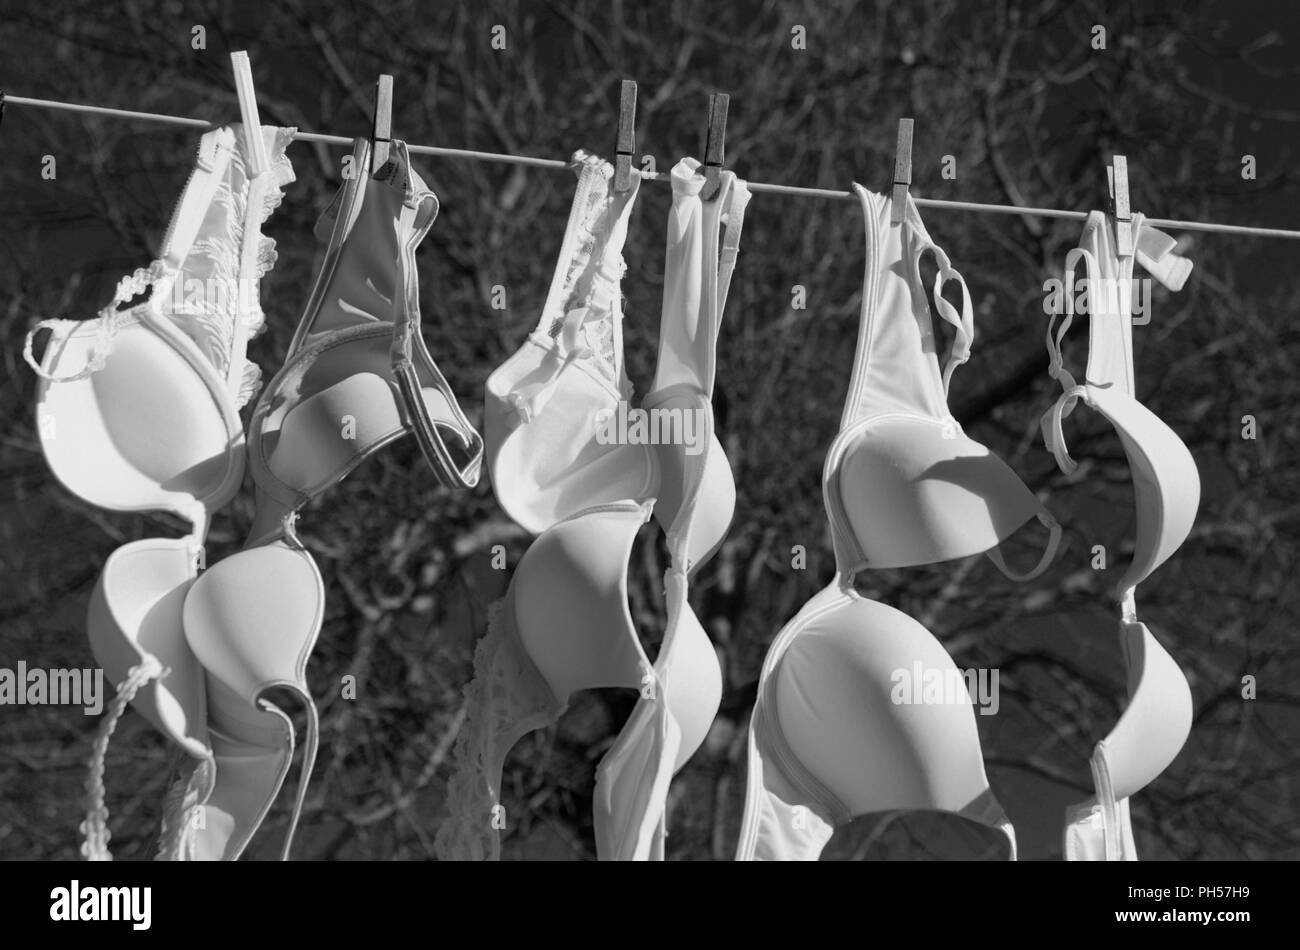 https://c8.alamy.com/comp/PH57H9/laundry-line-full-of-womens-bras-drying-in-sun-PH57H9.jpg